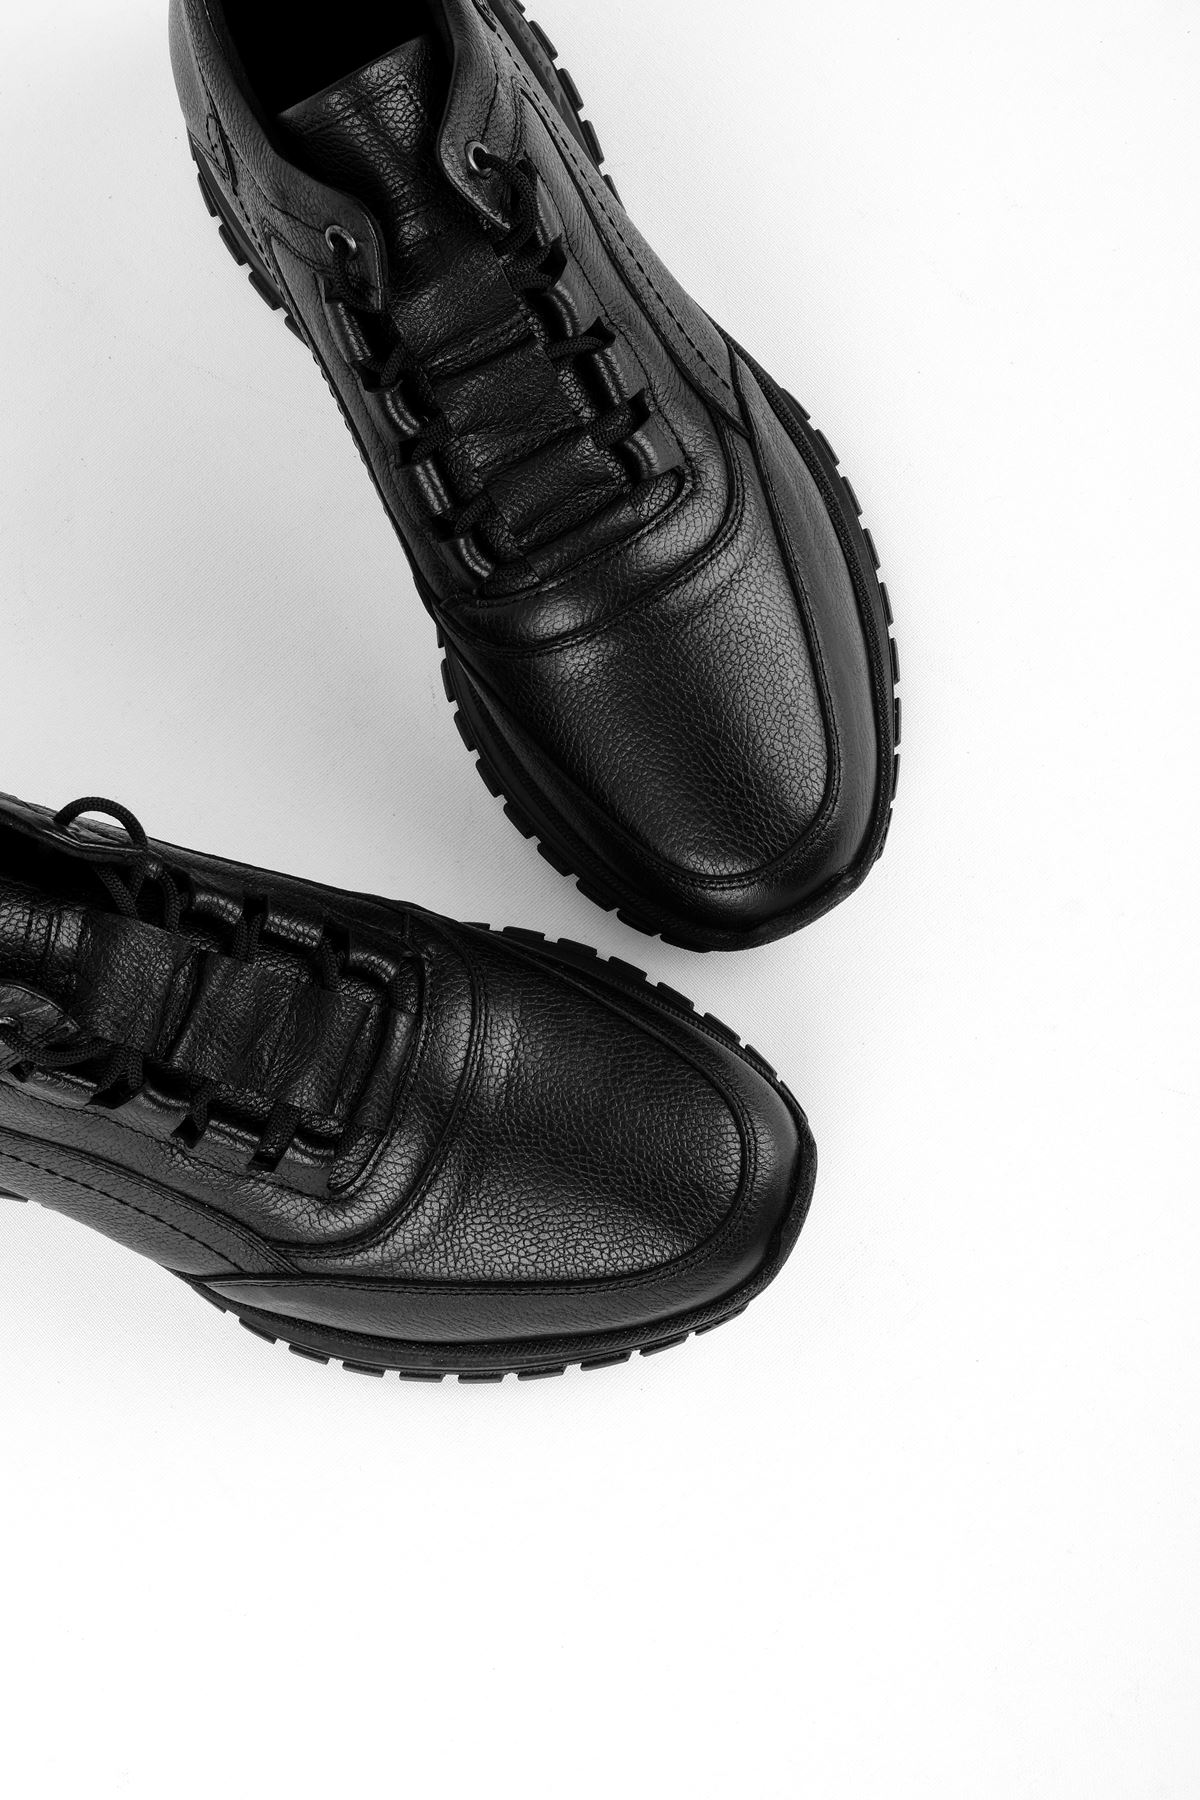 Raxel Hakiki Deri Erkek Ayakkabı-siyah